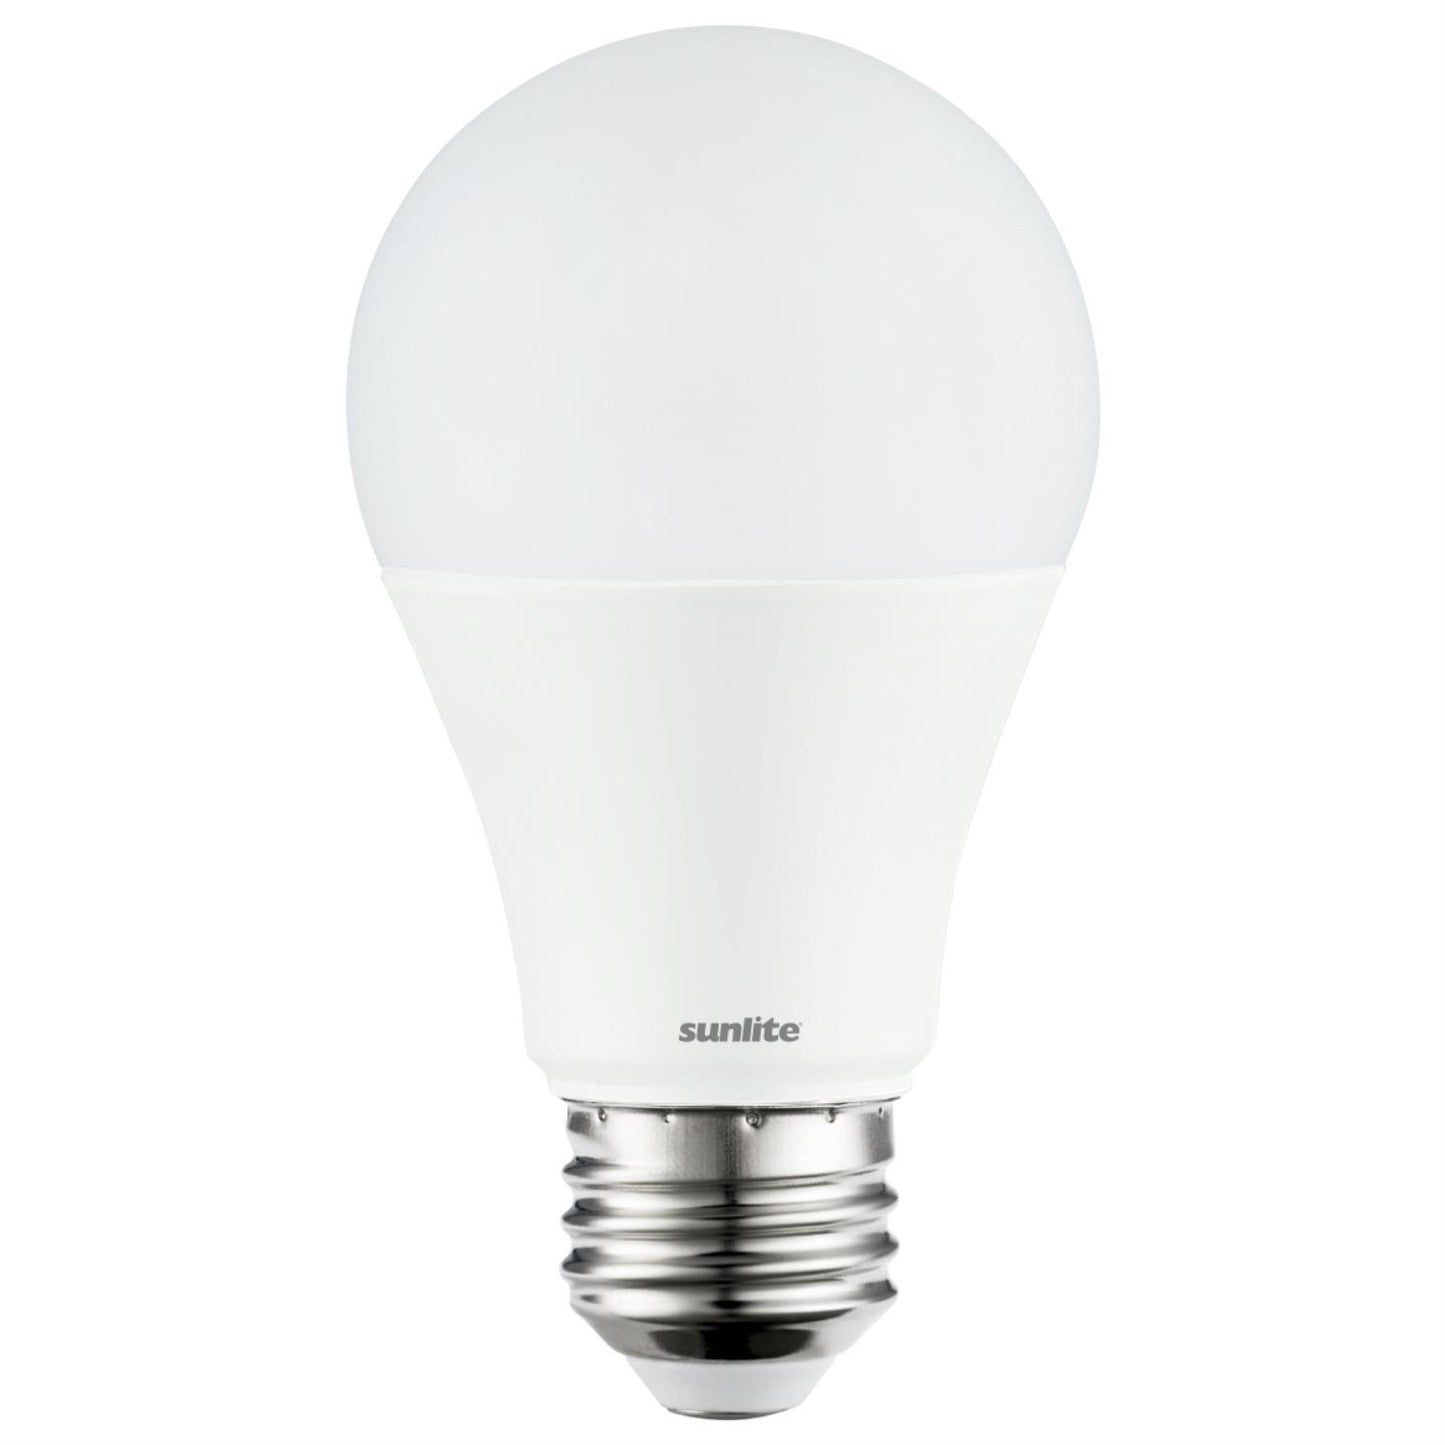 3 Pack Sunlite A19 LED Bulbs, 11 Watt (75 Watt Equivalent), 1100 Lumens, Medium (E26) Base, 3000K Warm White, UL Listed, Energy Star